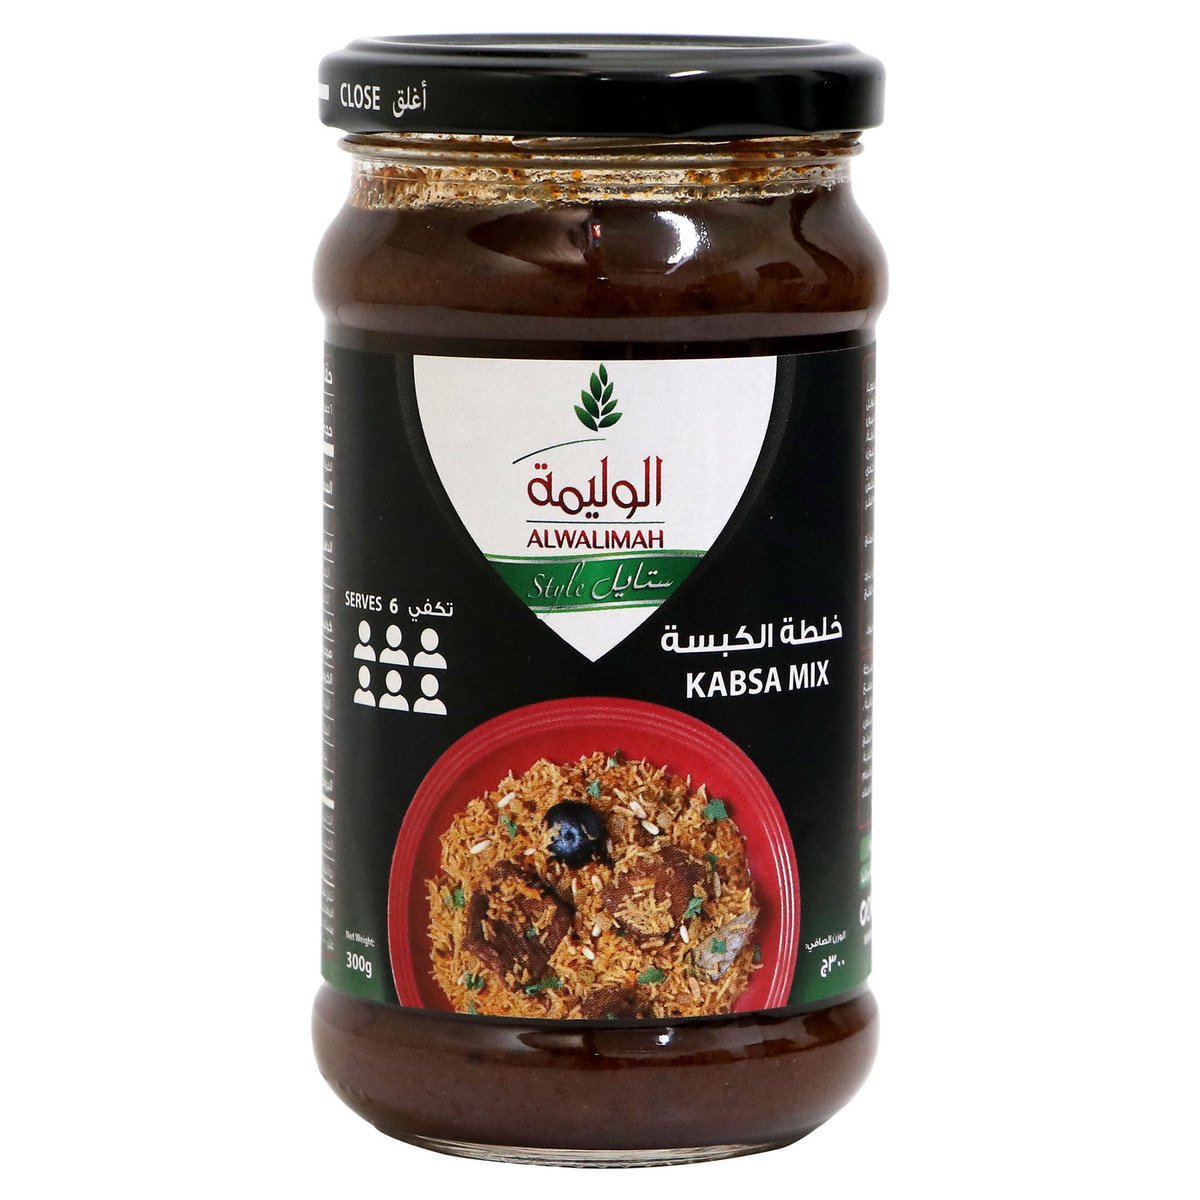 Buy Al Walimah Kabsa Mix Sauce 300g Online at Best Price | Cooking Sauce | Lulu KSA in Saudi Arabia